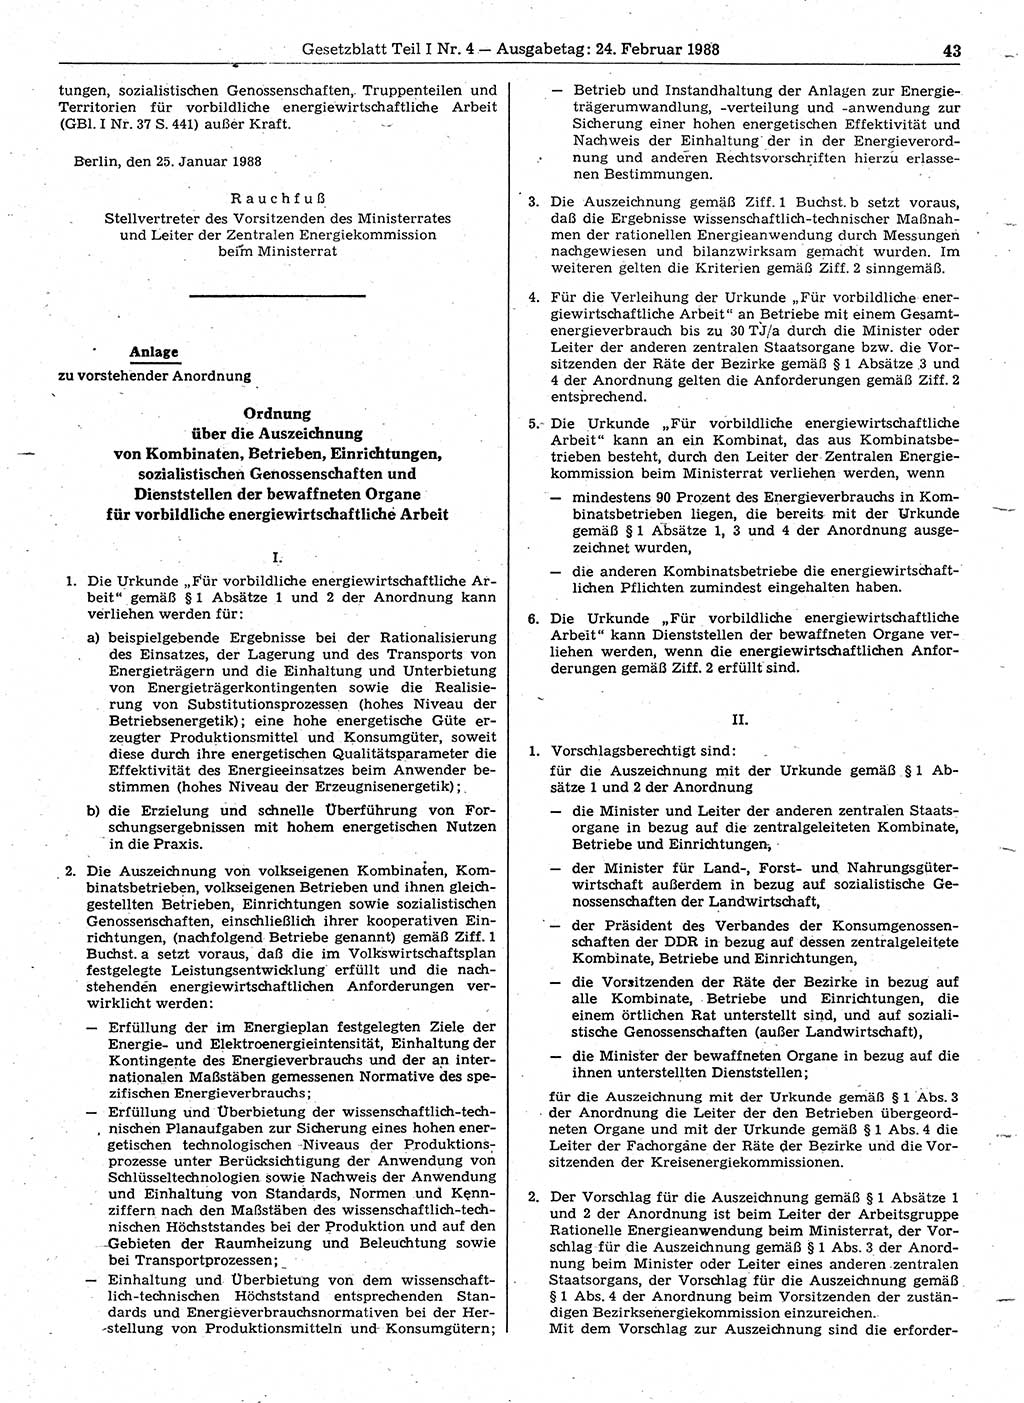 Gesetzblatt (GBl.) der Deutschen Demokratischen Republik (DDR) Teil Ⅰ 1988, Seite 43 (GBl. DDR Ⅰ 1988, S. 43)